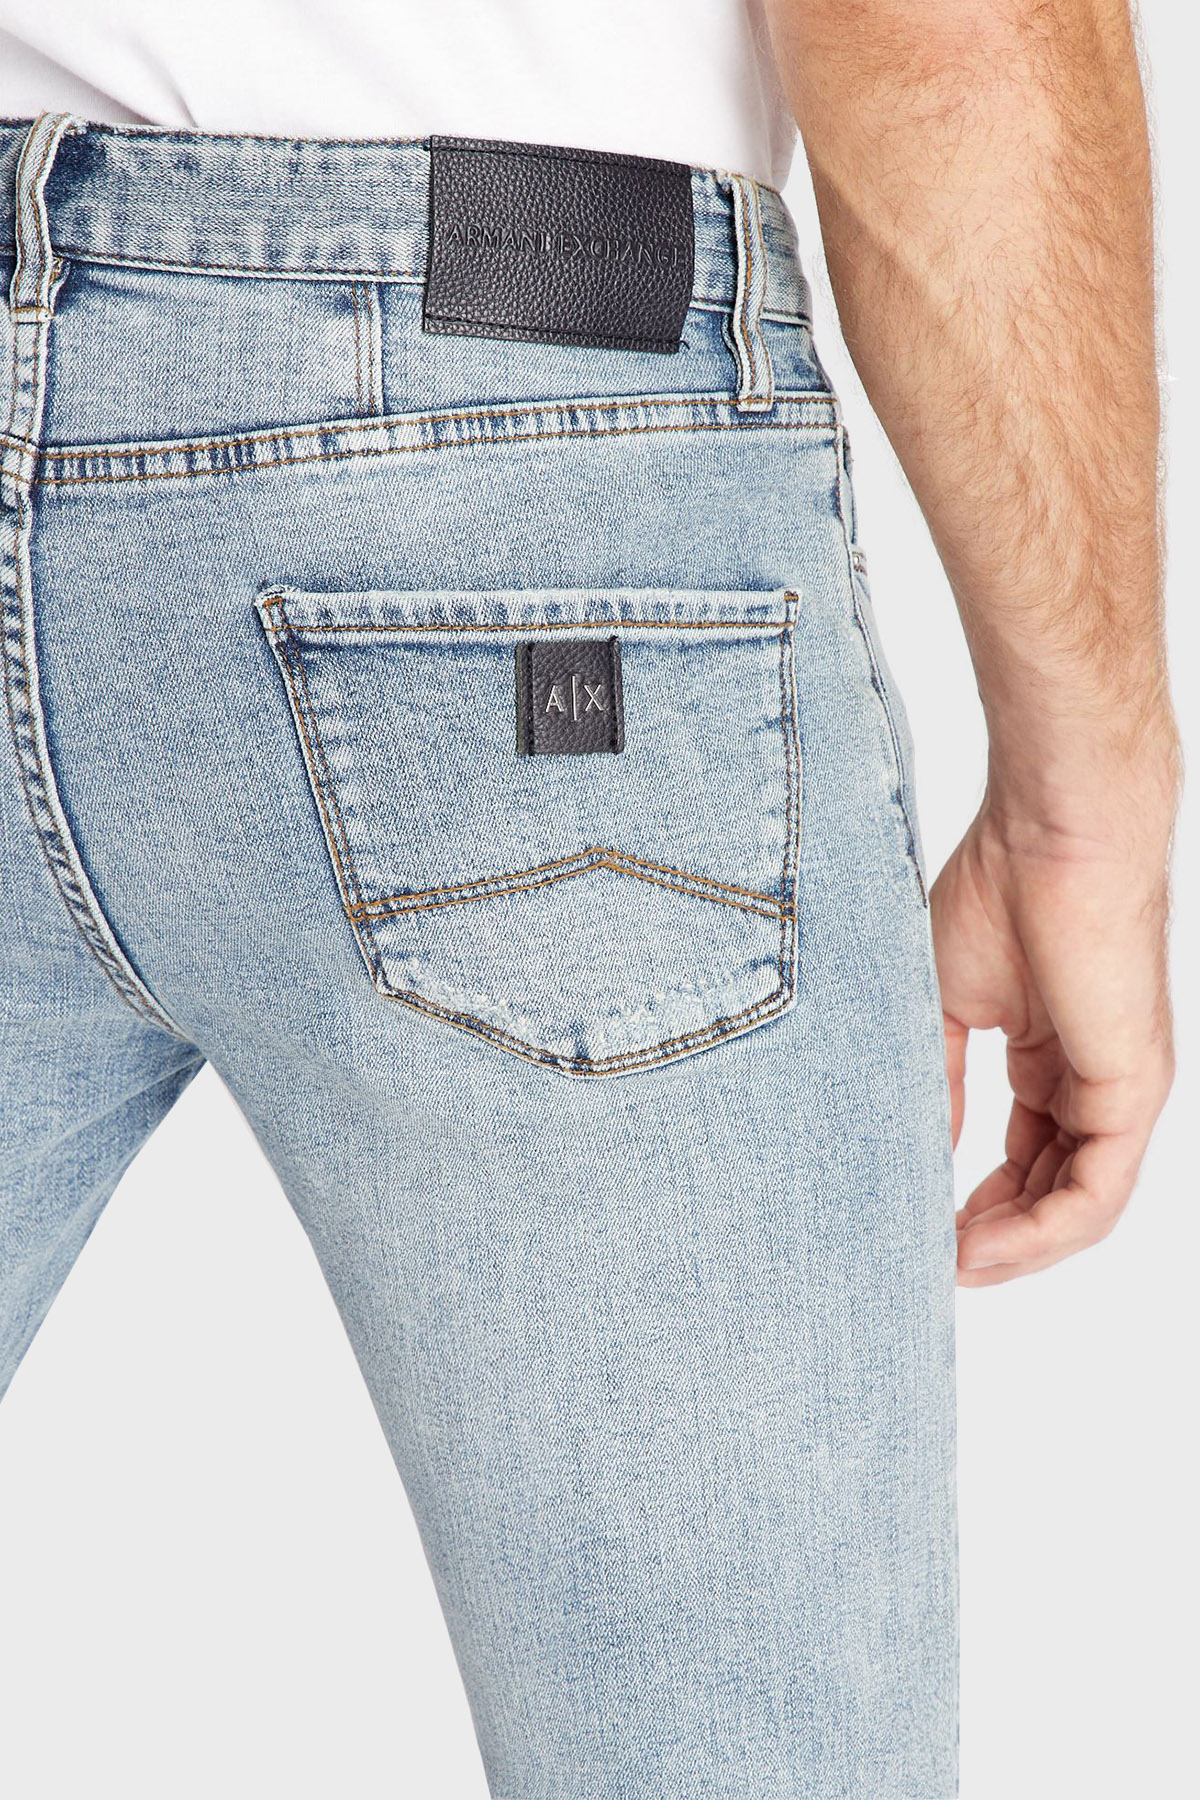 Armani Exchange J10 Jeans Erkek Kot Pantolon 6LZJ10 Z2VKZ 1500 AÇIK MAVİ